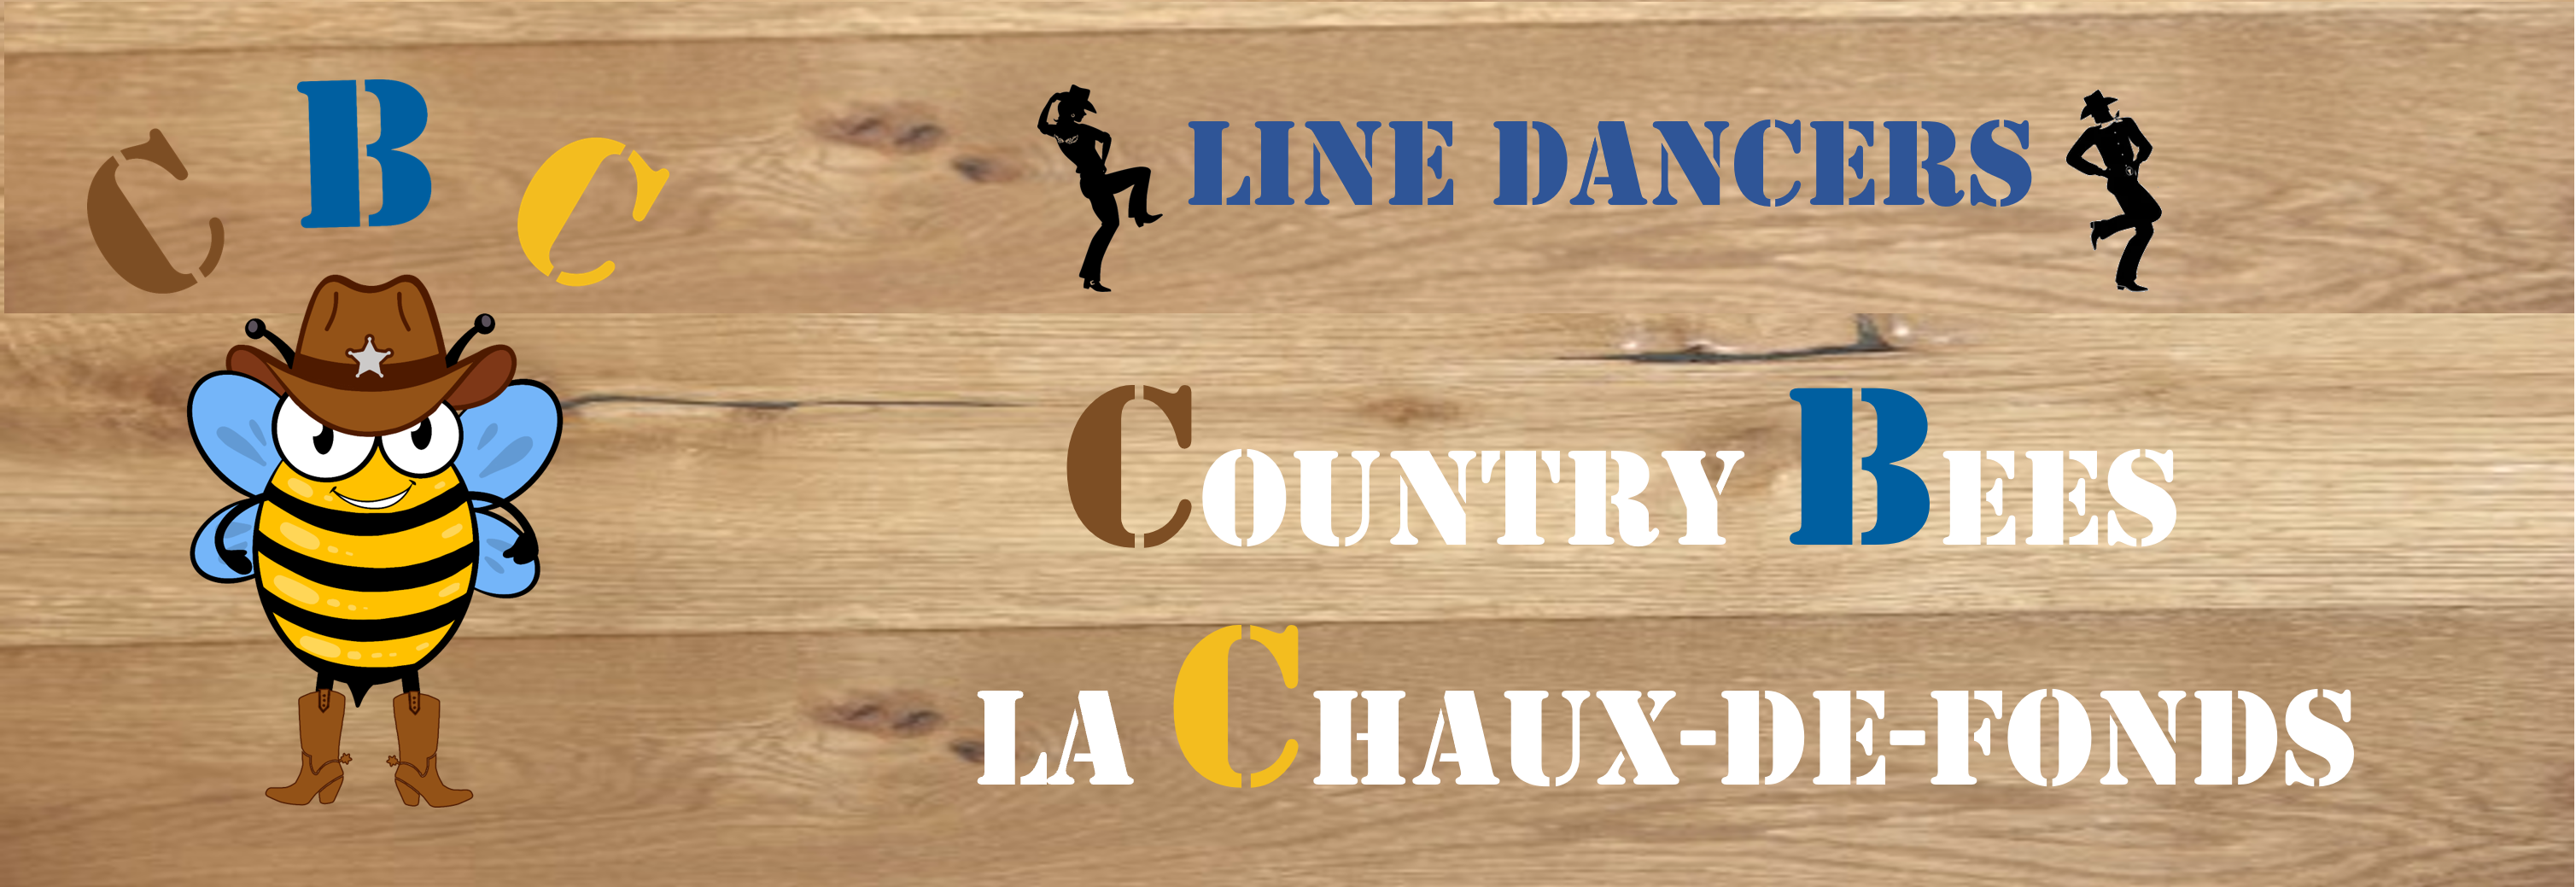 CBC – Country Bees La Chaux-de-Fonds, Line Dancers